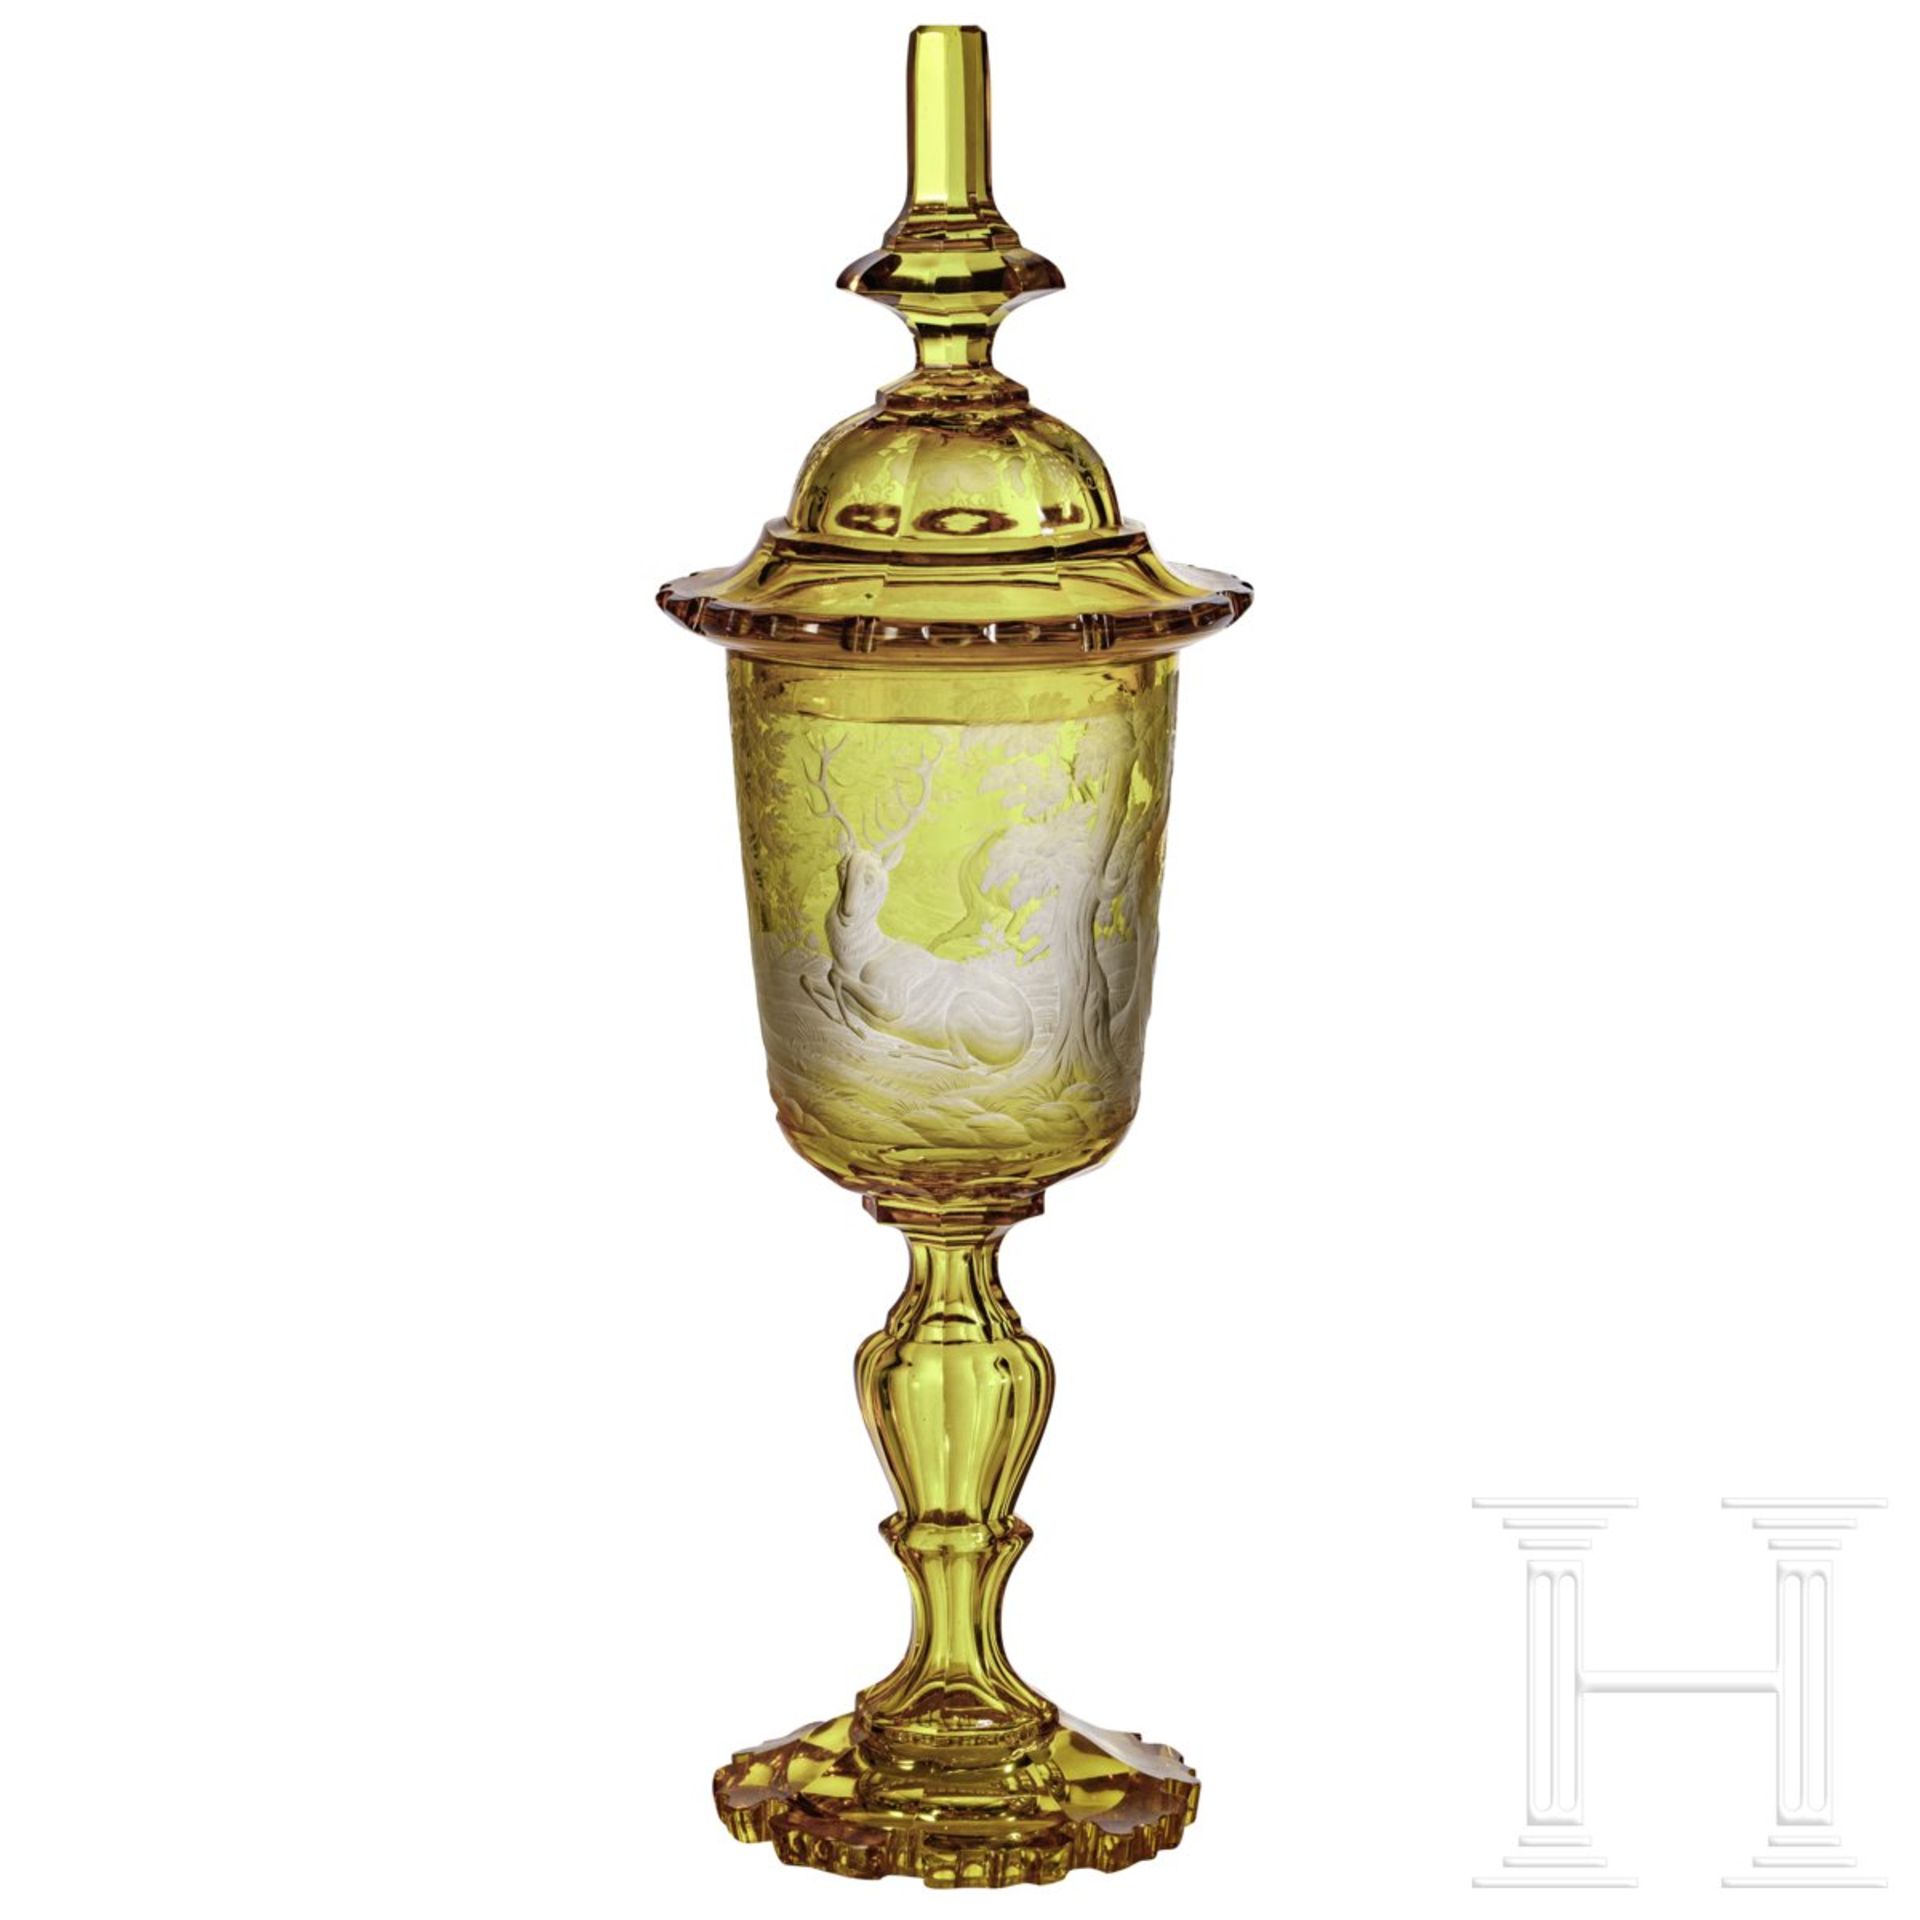 Großer Deckelpokal mit jagdlichen Motiven, Böhmen, 19. Jhdt.Gelbliches Glas mit allseitig - Bild 2 aus 4